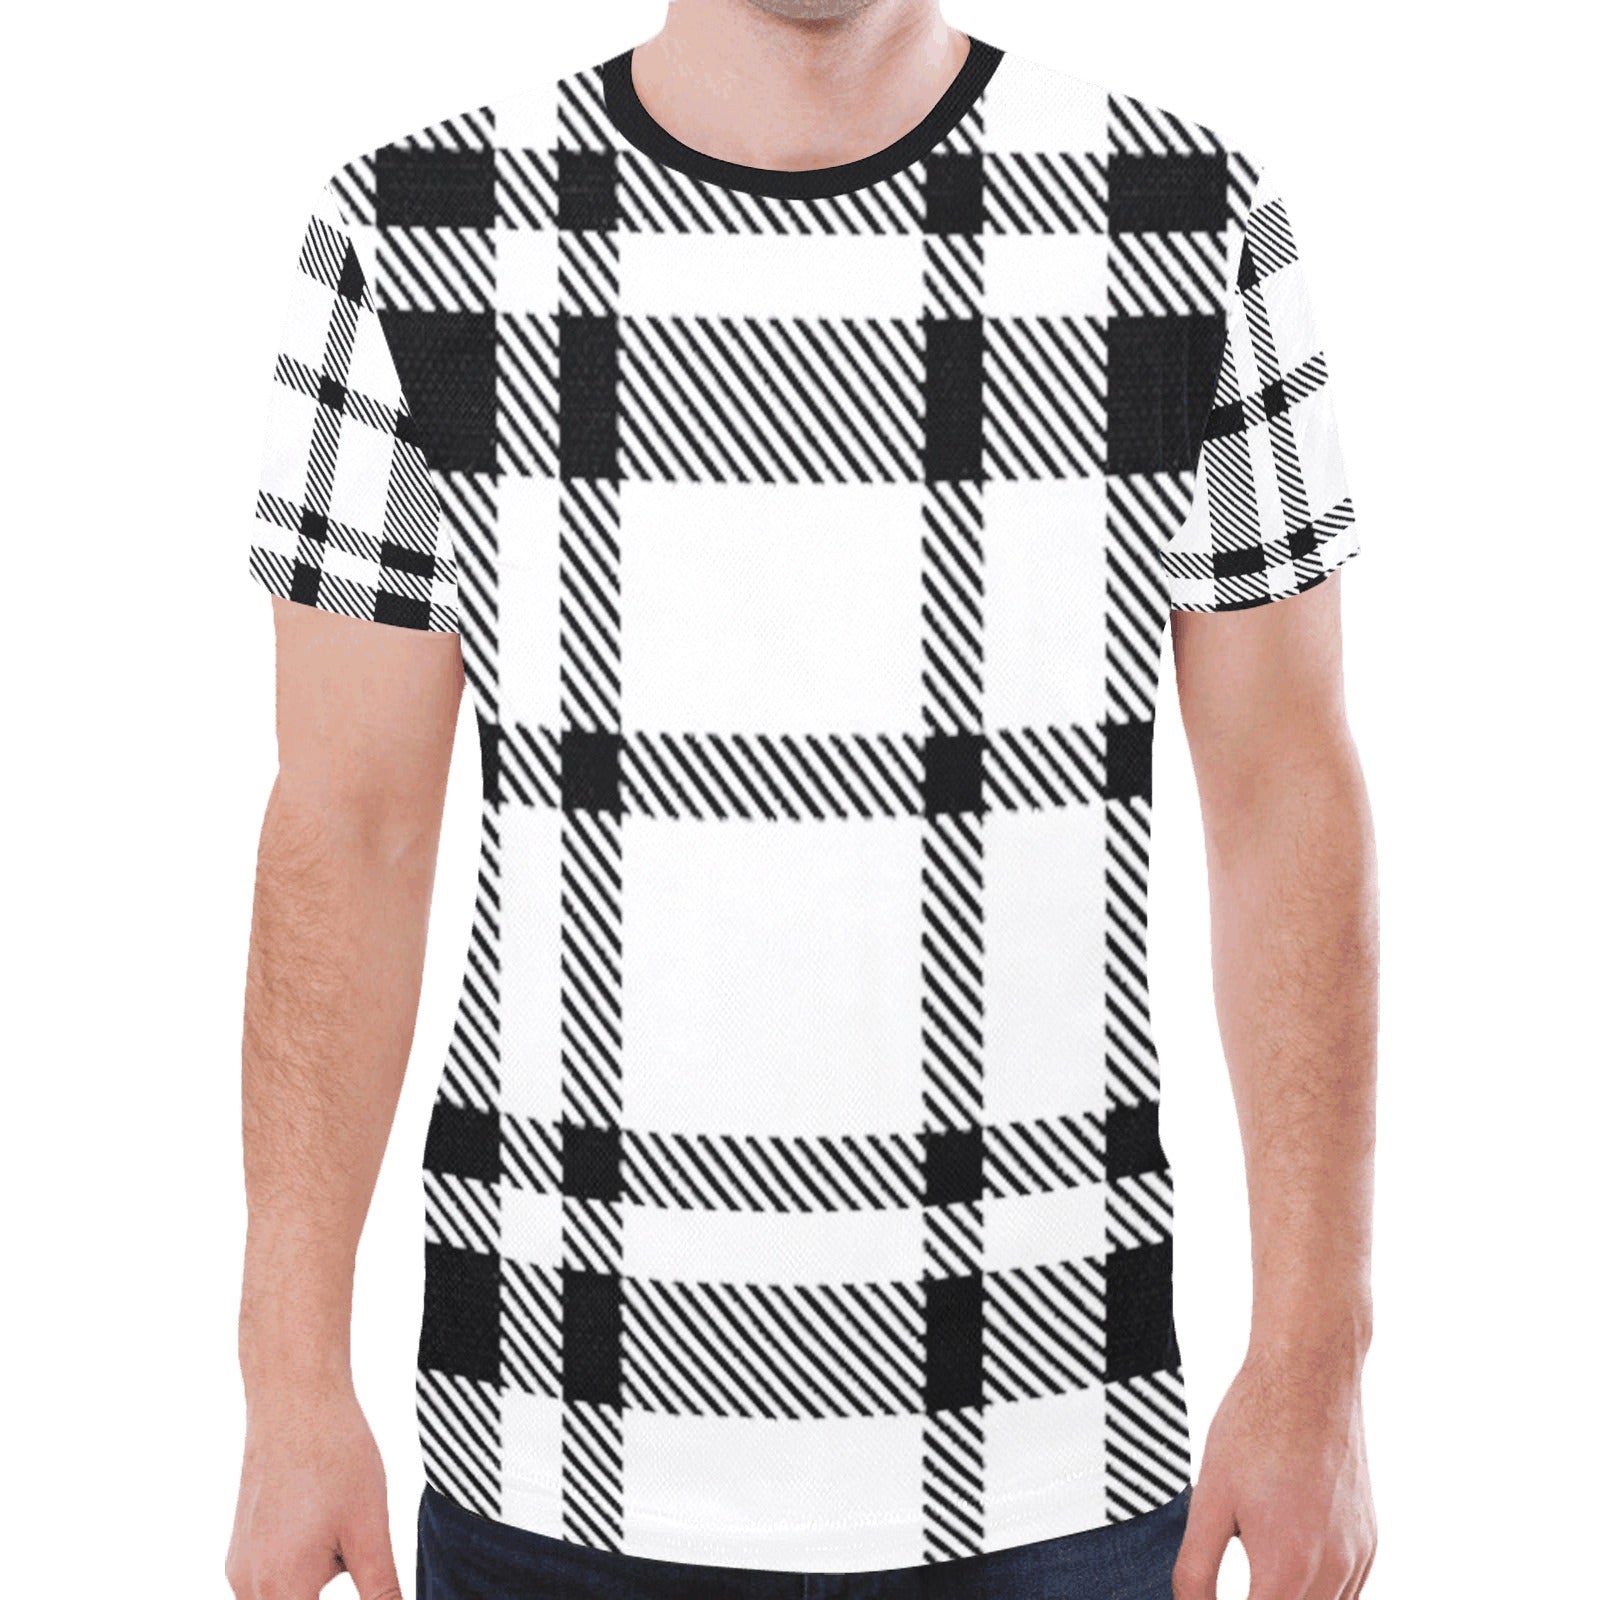 fz men's tee men's all over print mesh t-shirt (model t45)